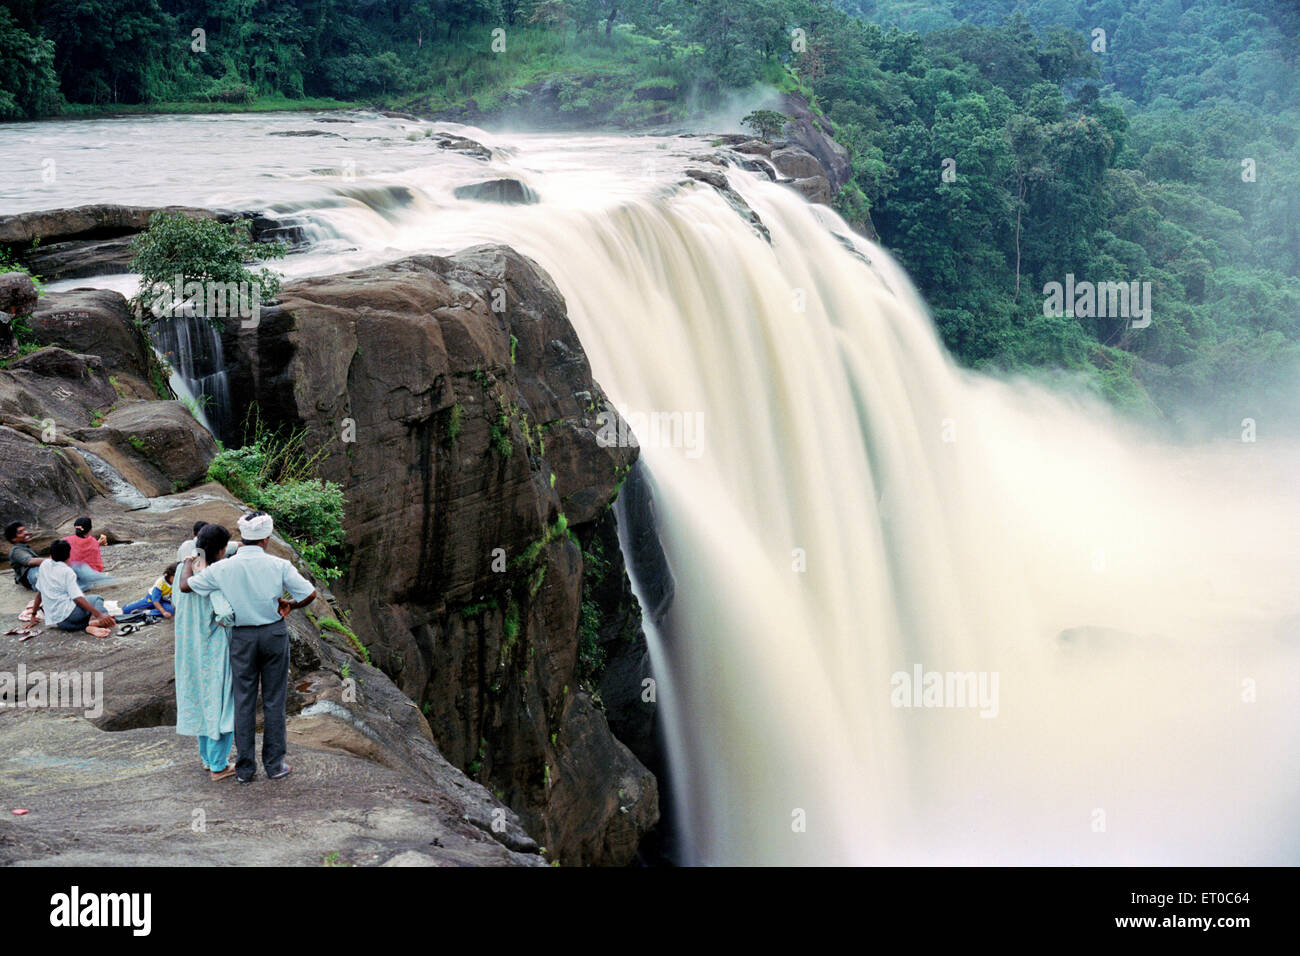 Atirappally falls near Chalakkudy ; Kerala ; India Stock Photo